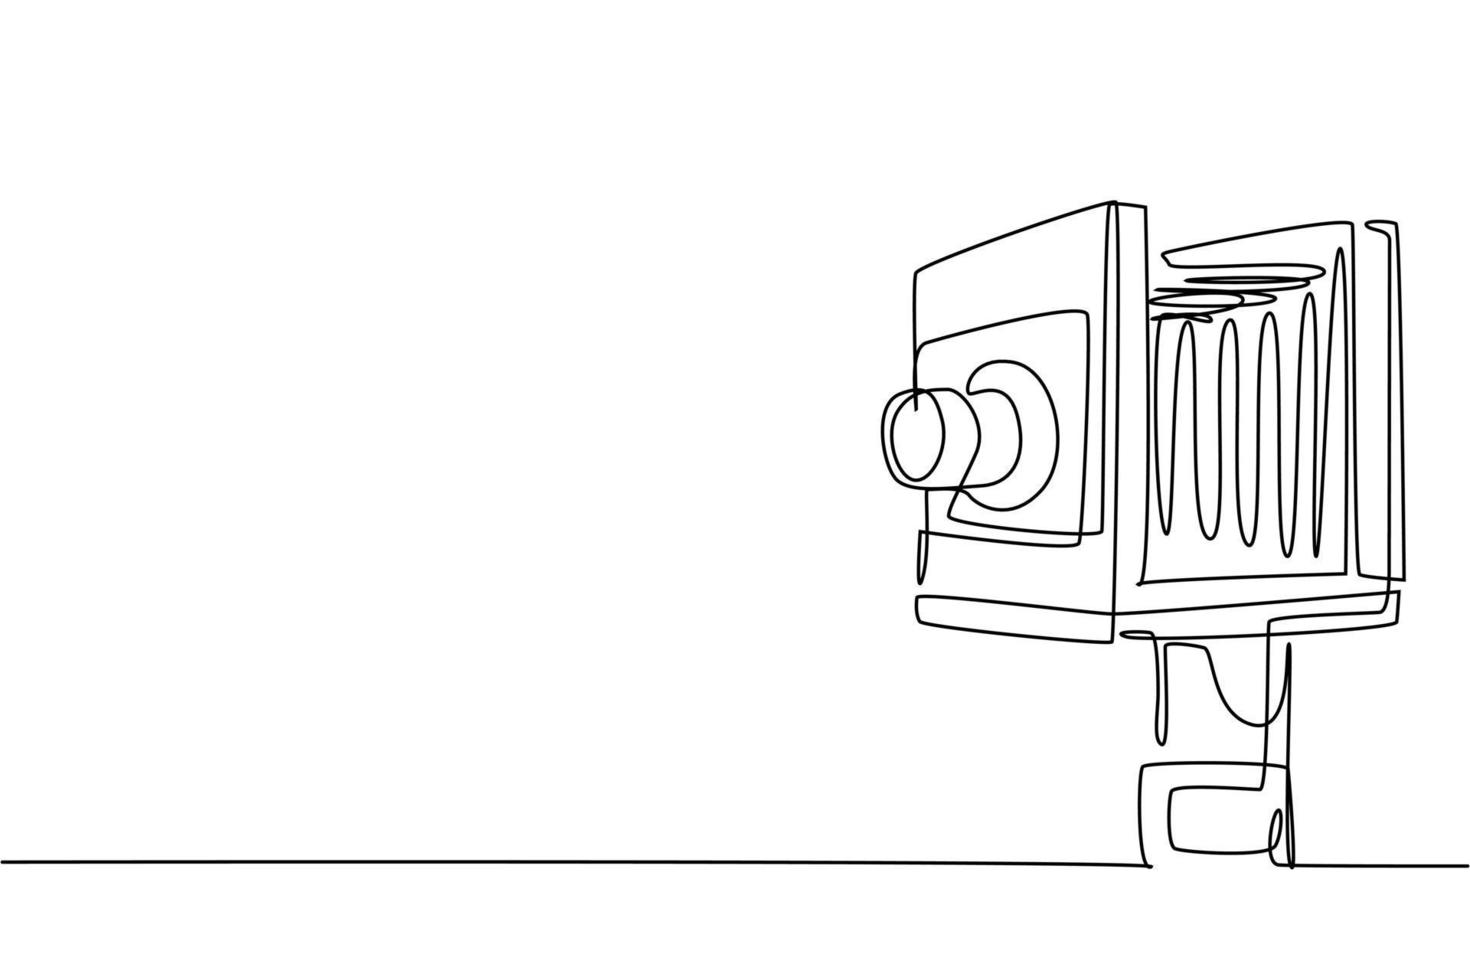 eine durchgehende Strichzeichnung des alten antiken Retro-Filmkamera-Mittelformats. Vintage klassische antike Fotografie Ausrüstung Konzept Single-Line-Draw-Design-Grafik-Vektor-Illustration vektor